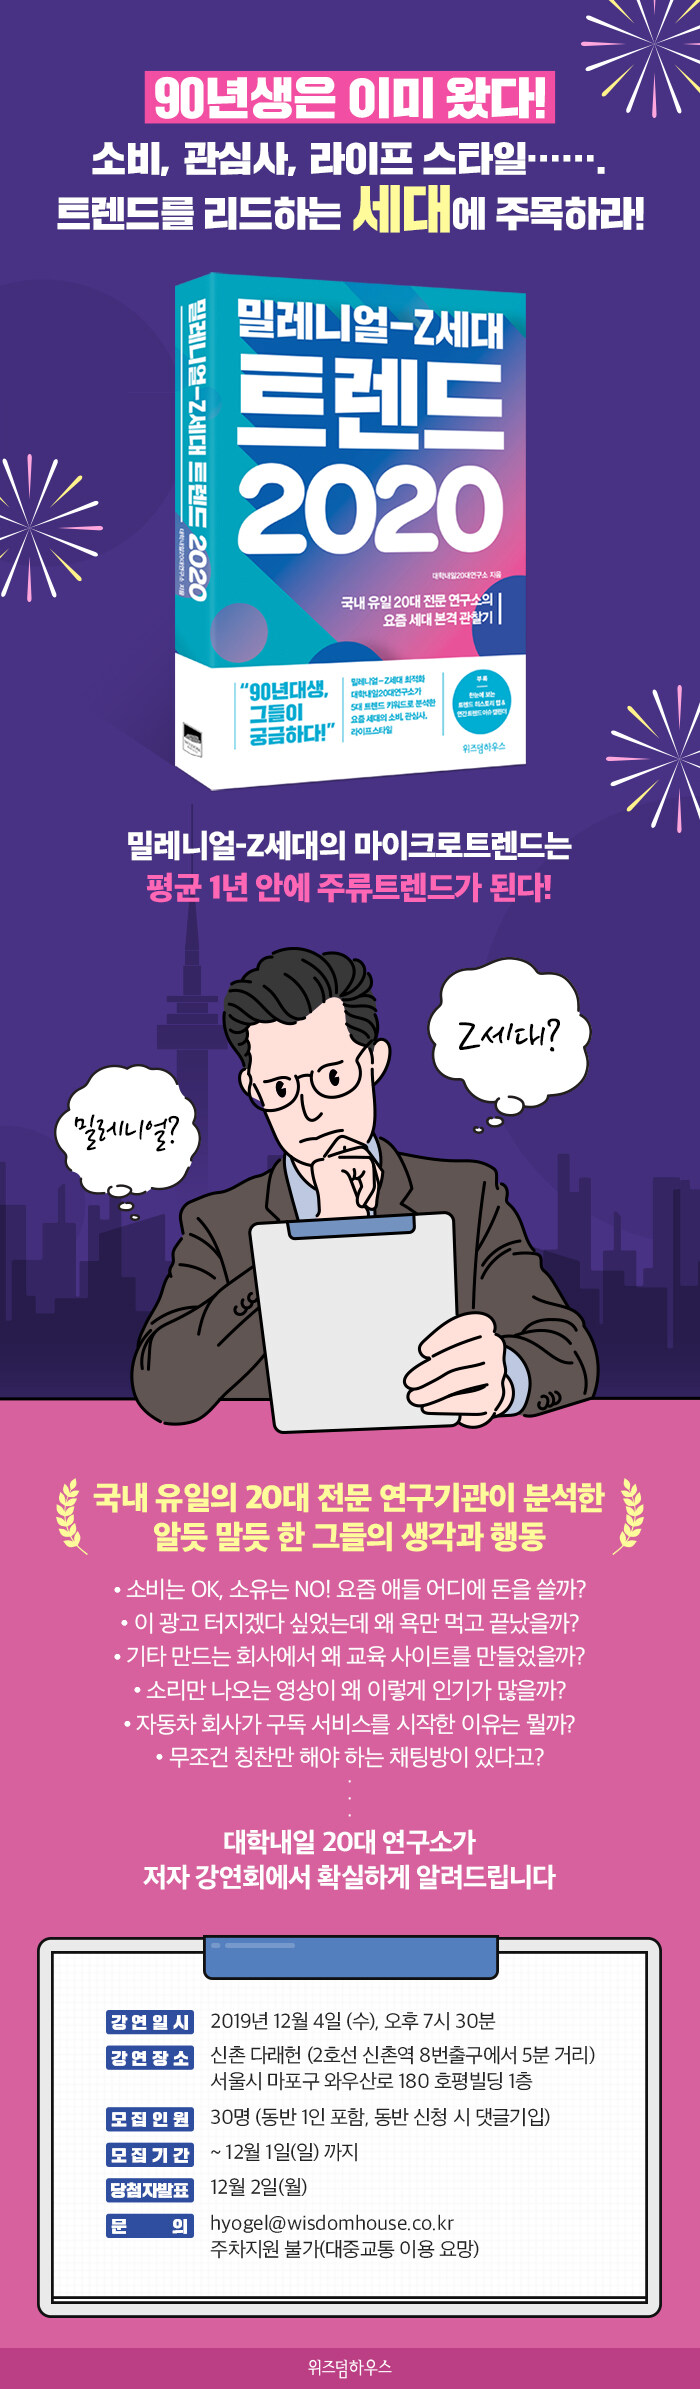 <밀레니얼-Z세대 트렌드 2020> 저자 강연회